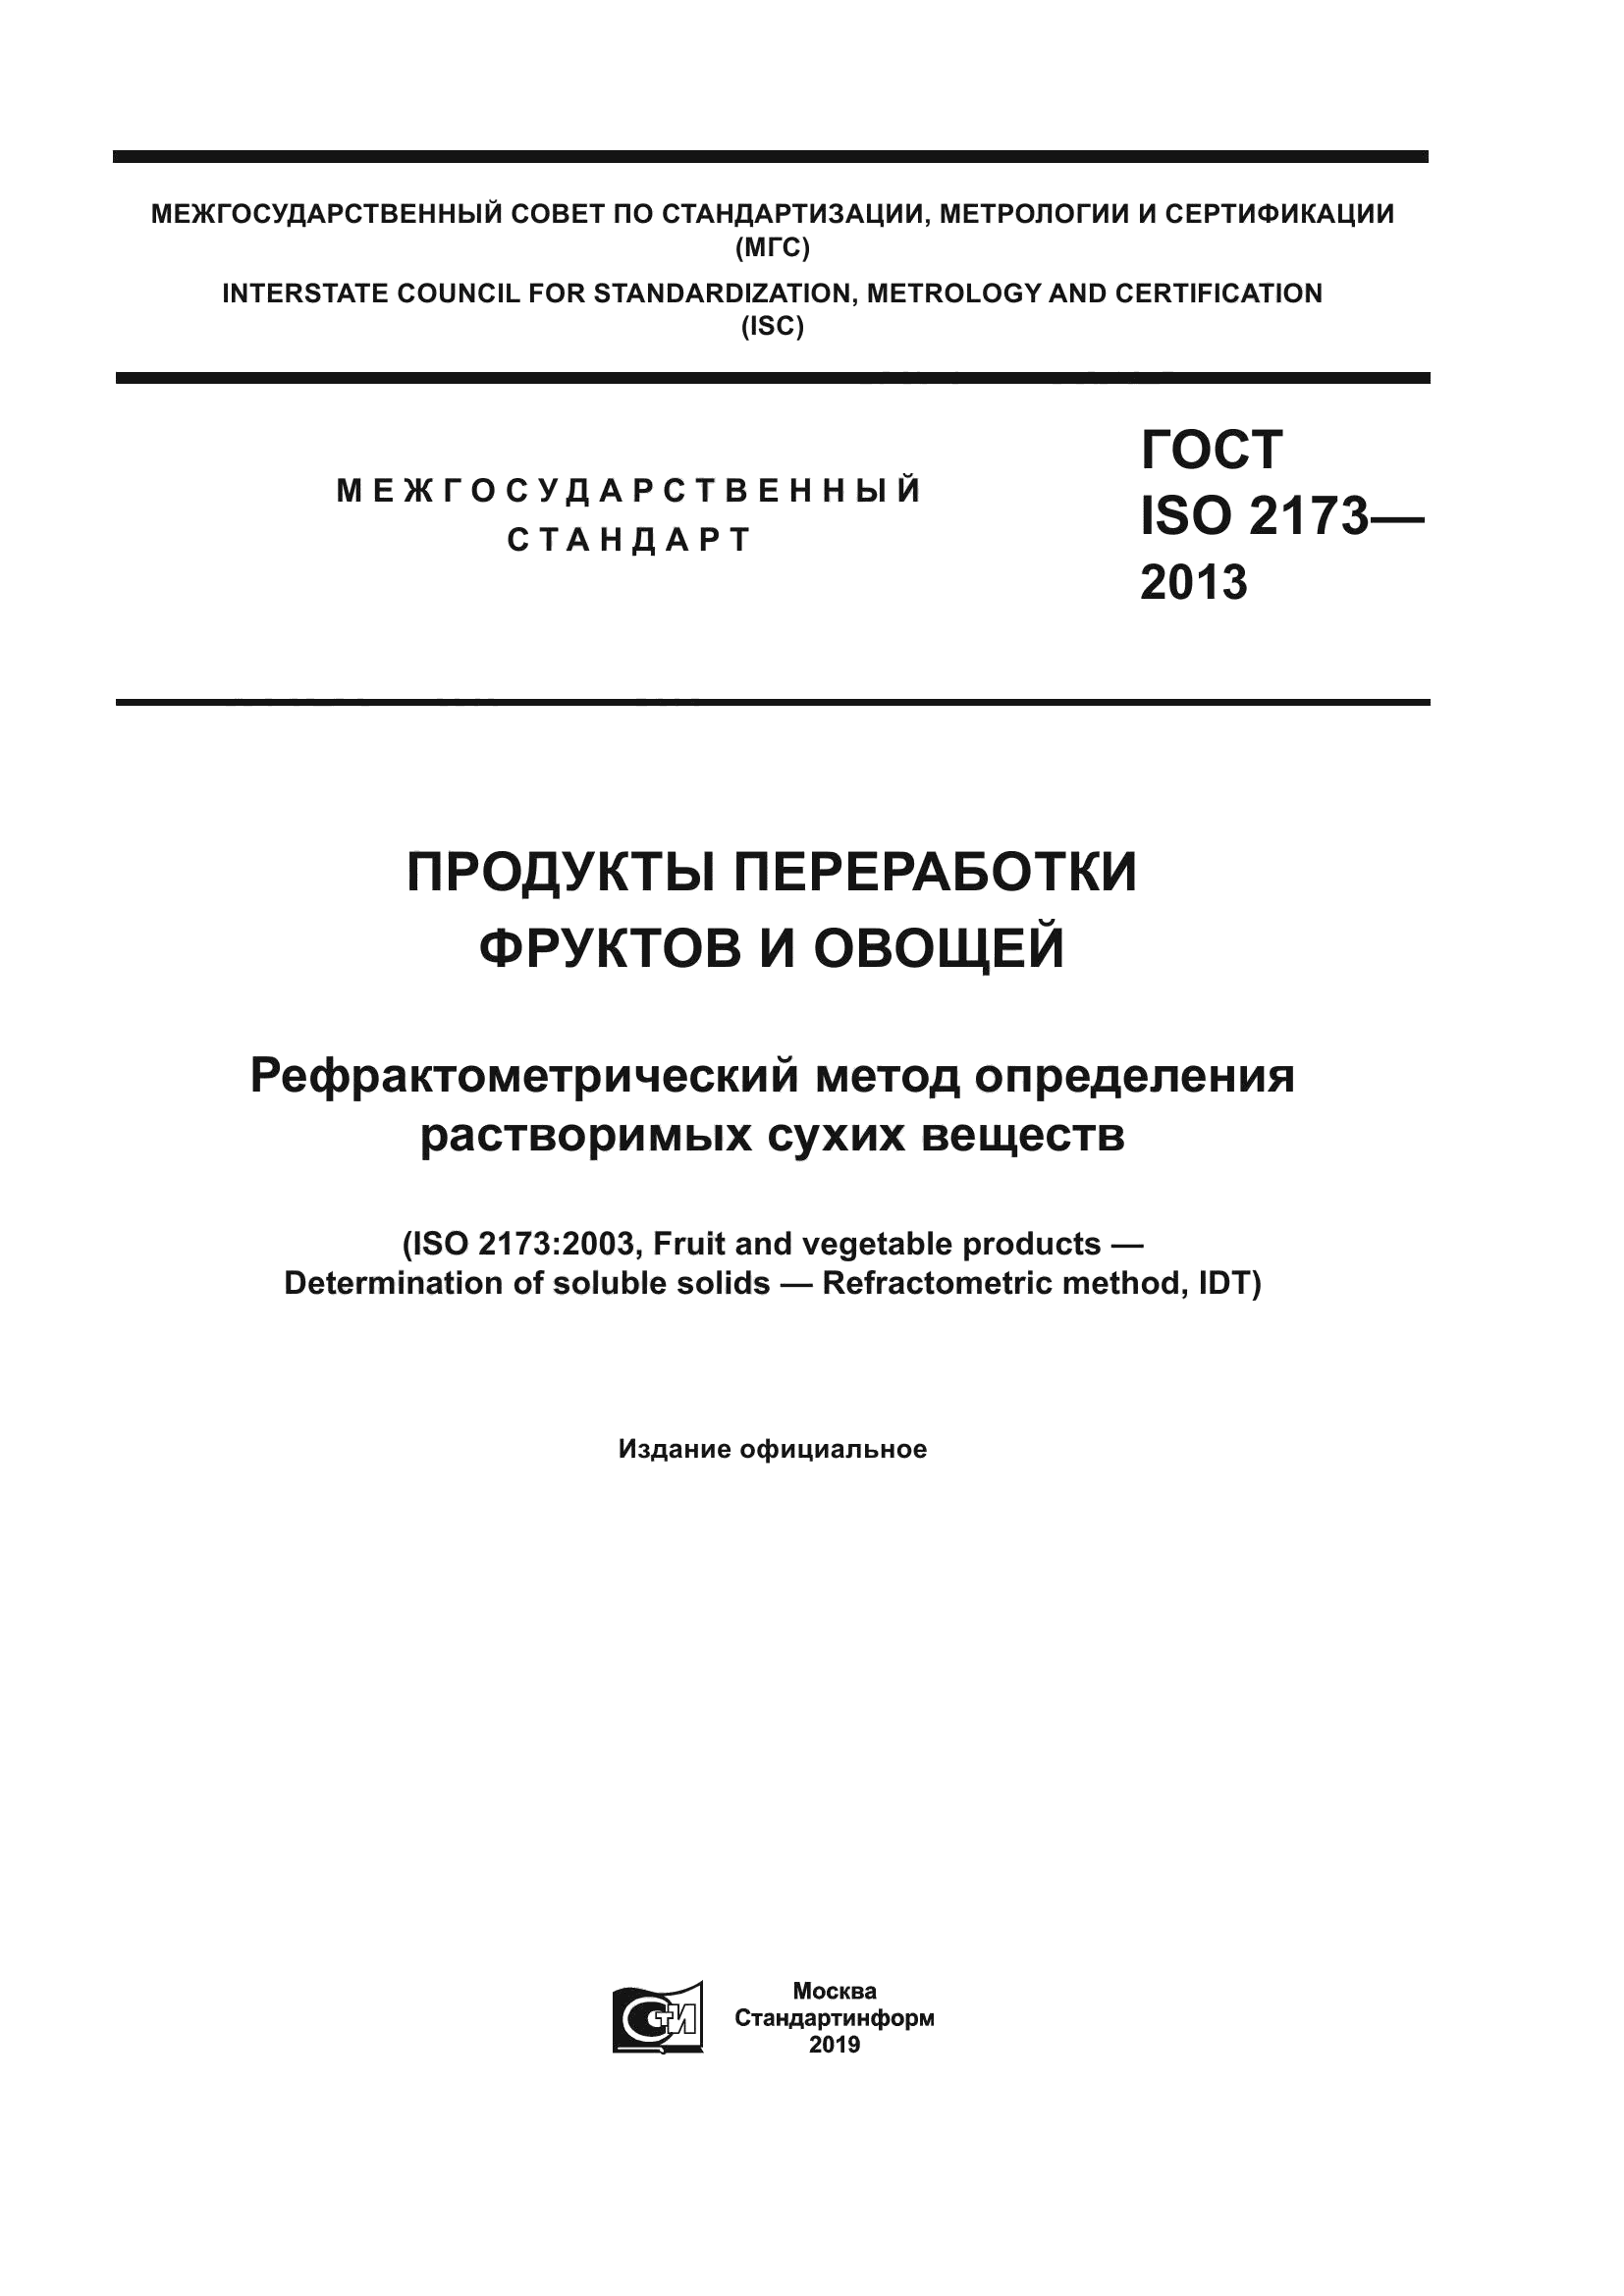 ГОСТ ISO 2173-2013